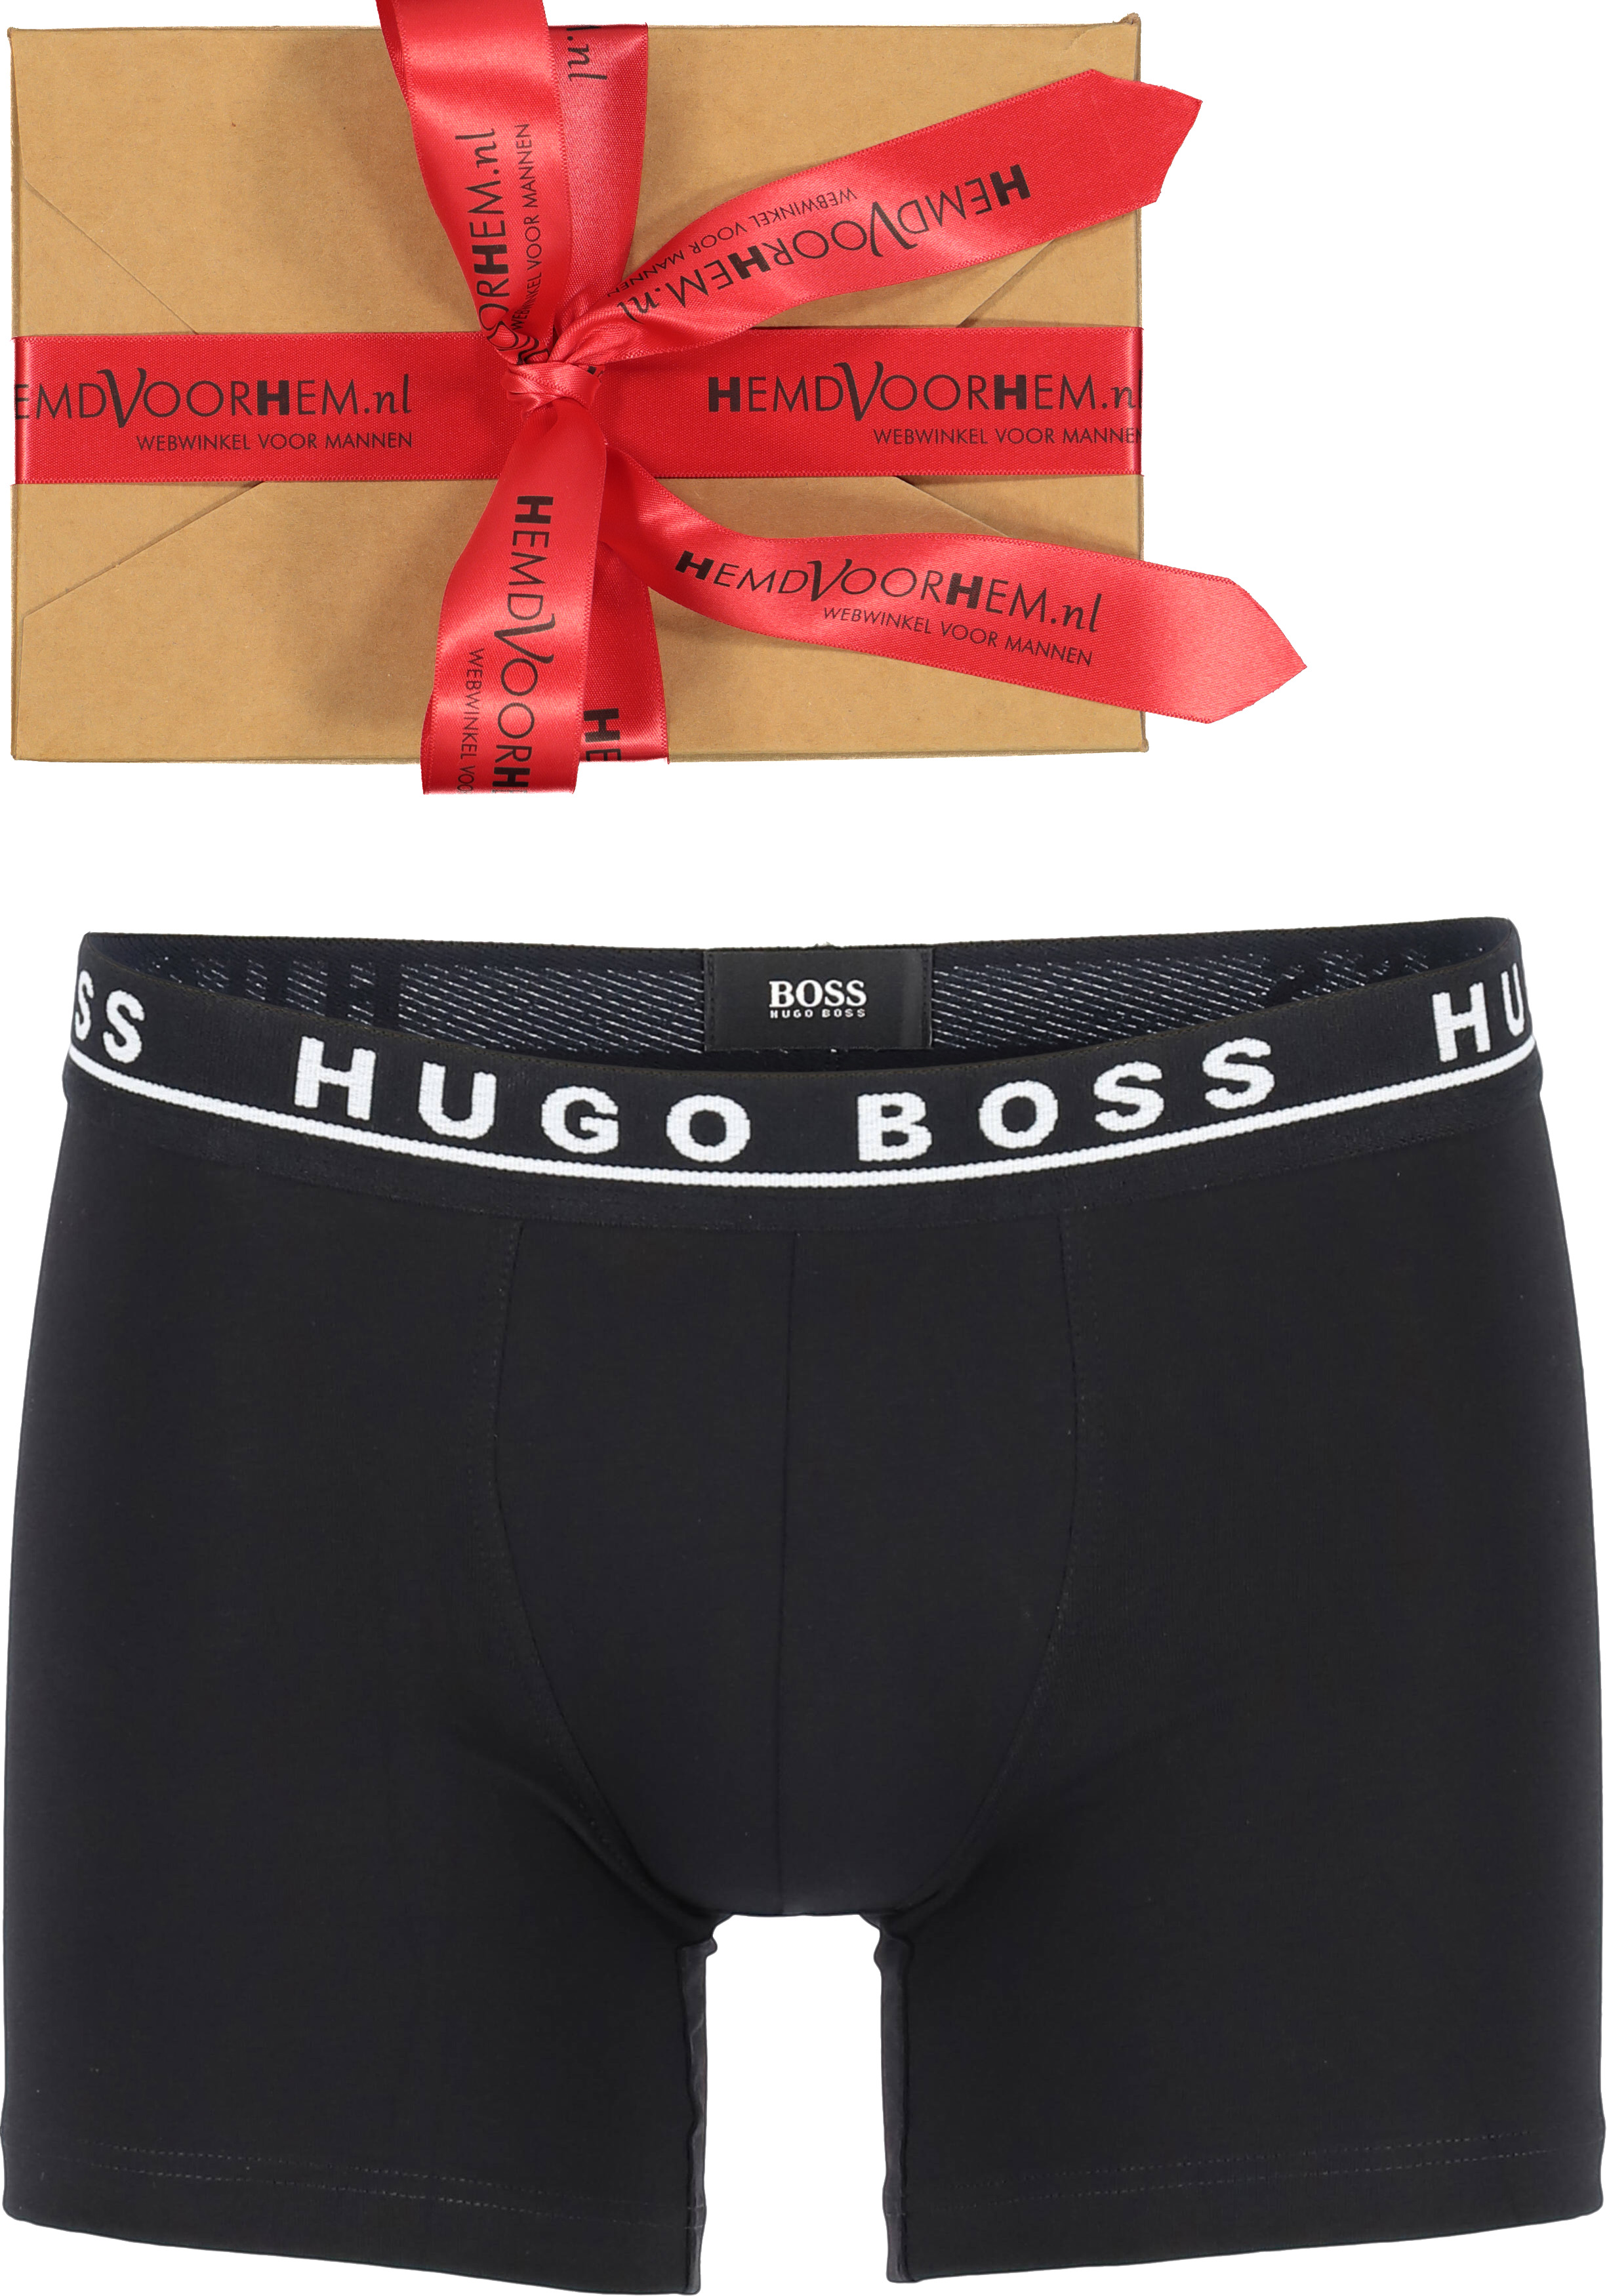 HUGO BOSS boxer zwart in cadeauverpakking 